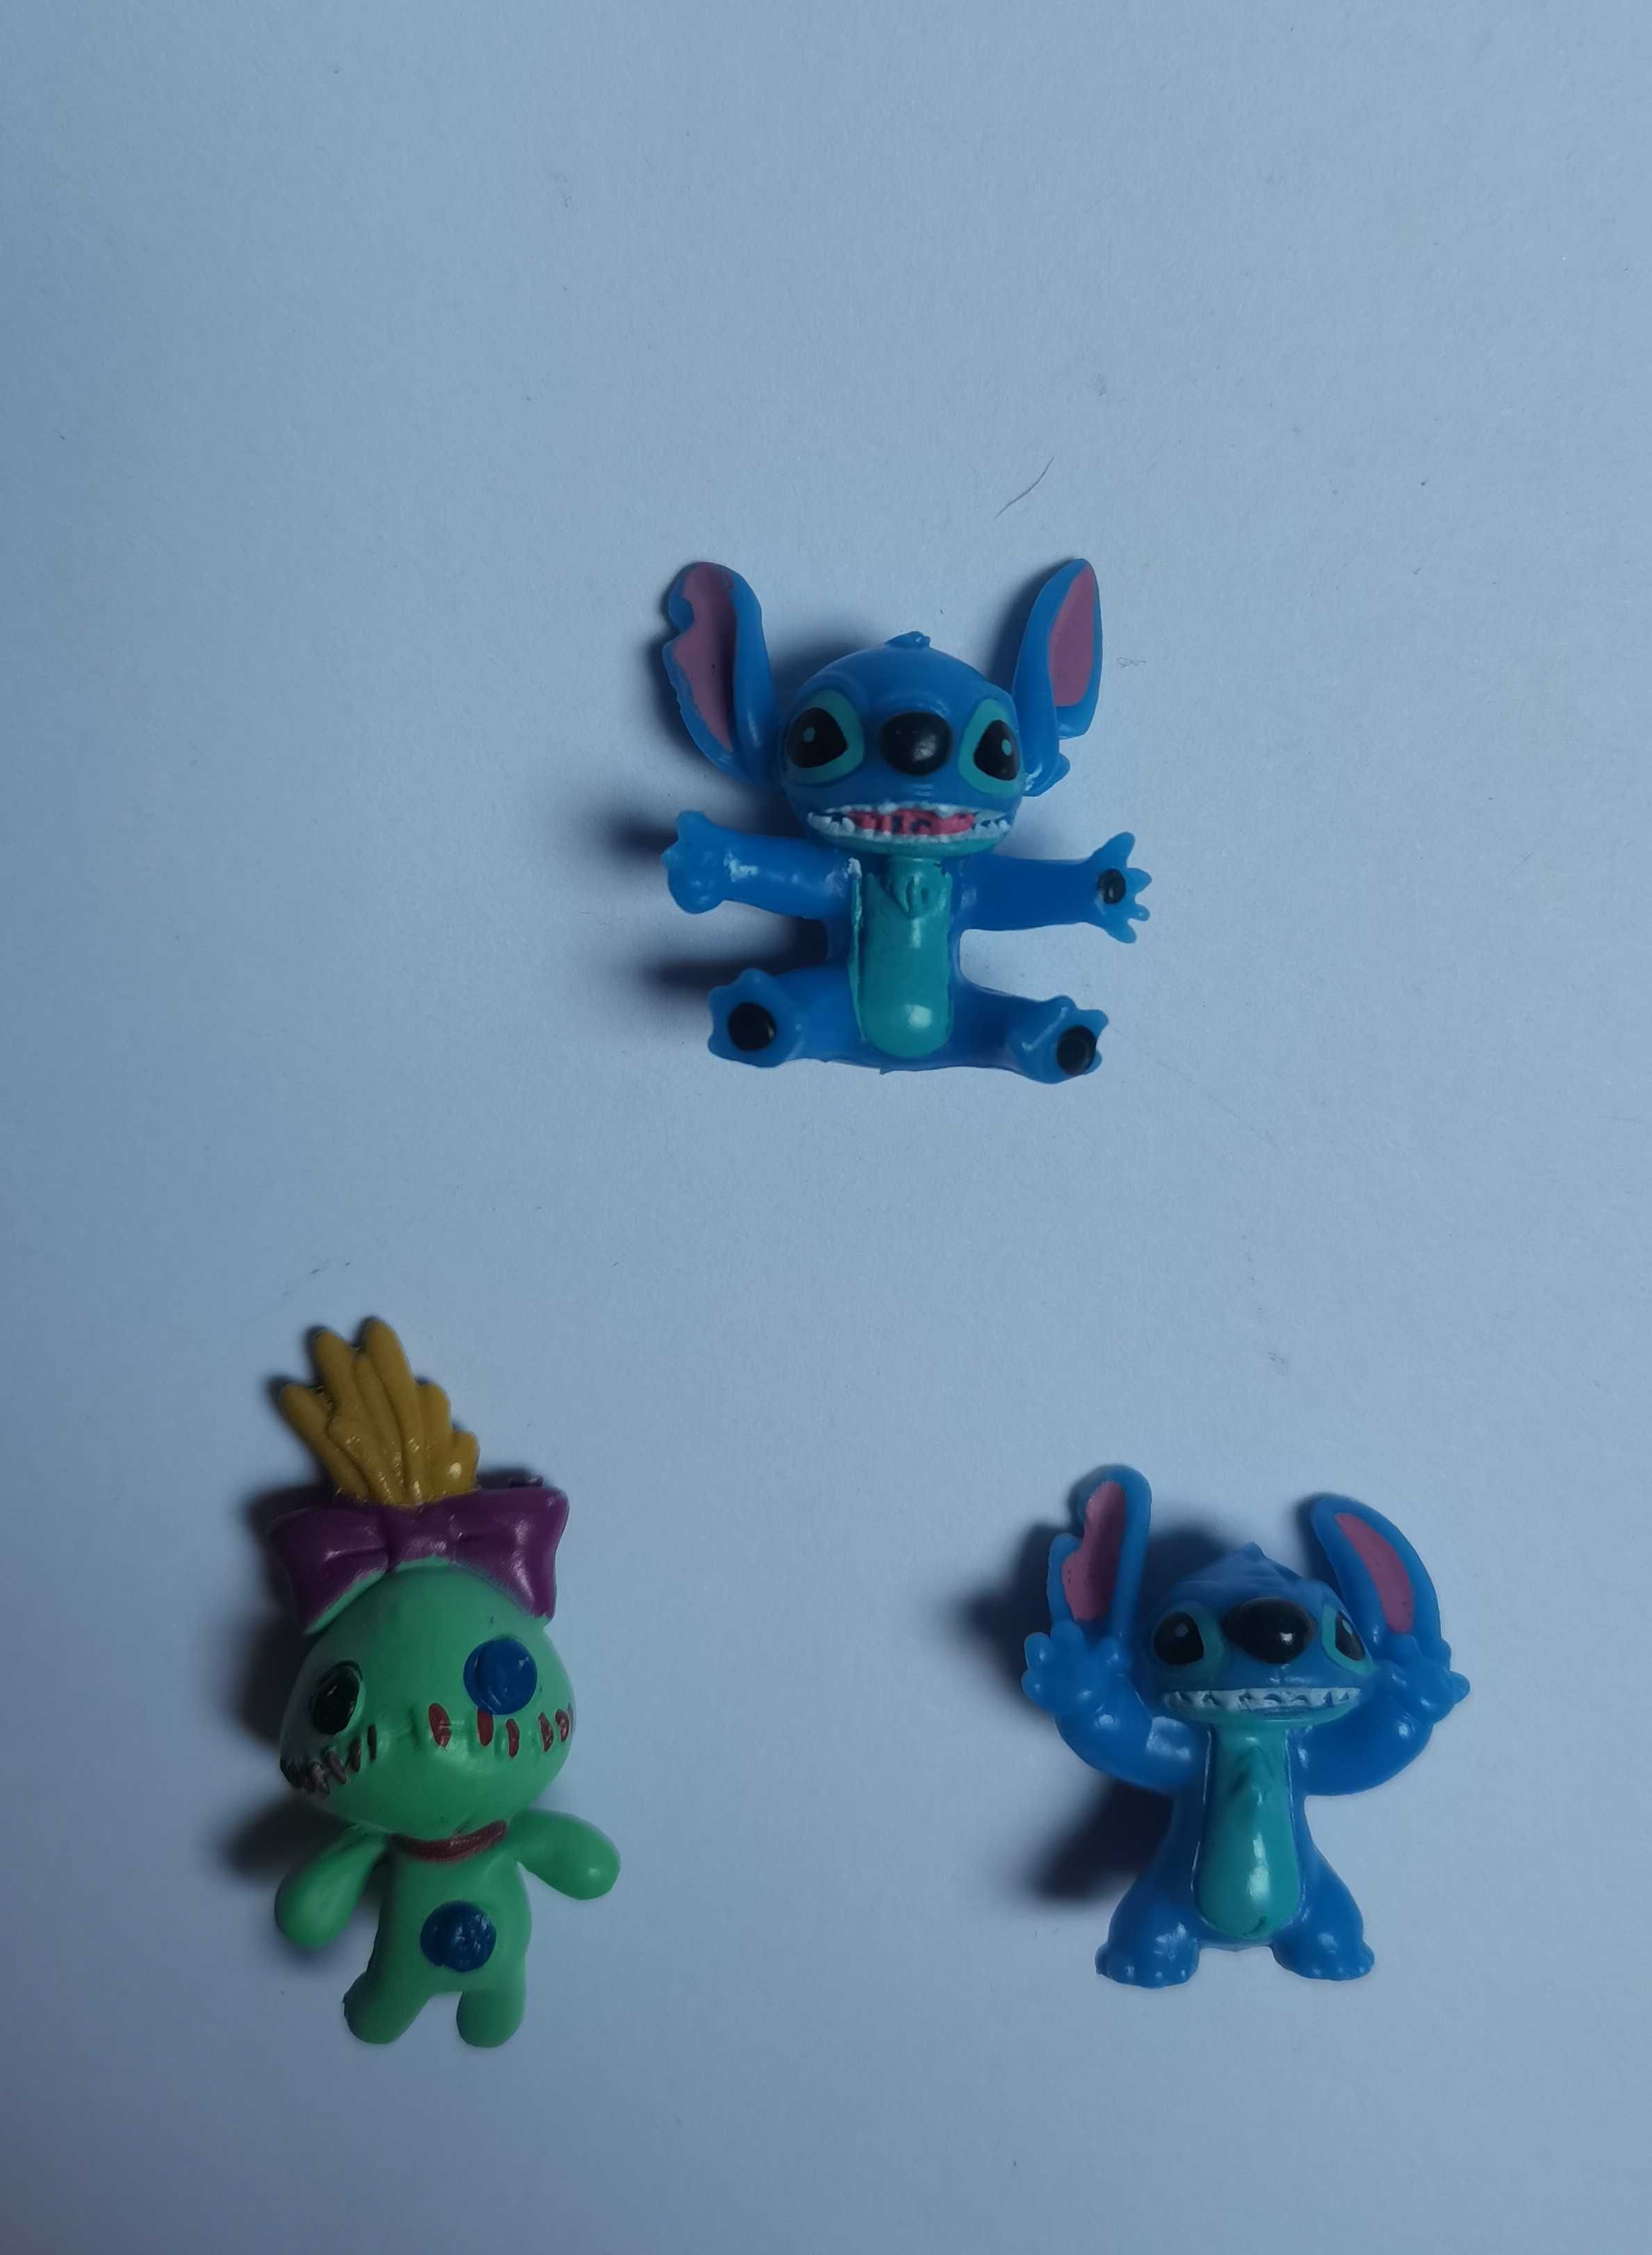 Stitch (Lilo & Stitch, Disney) - urocze mini figurki - 6 sztuk [1]